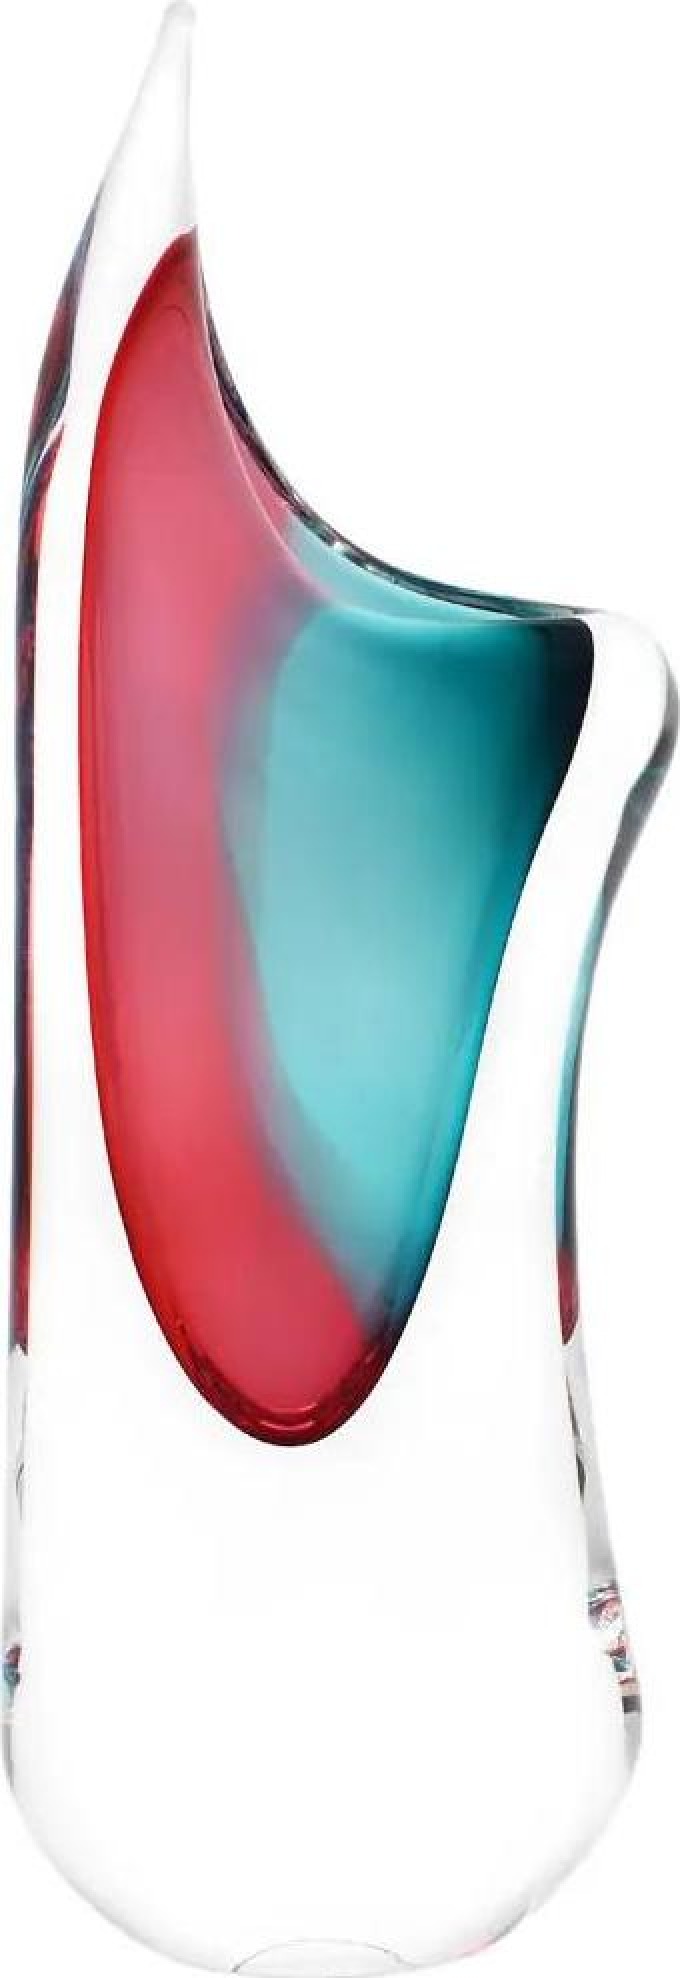 Skleněná váza hutní 04, růžová a tyrkysová, 34 cm | České hutní sklo od Artcristal Bohemia